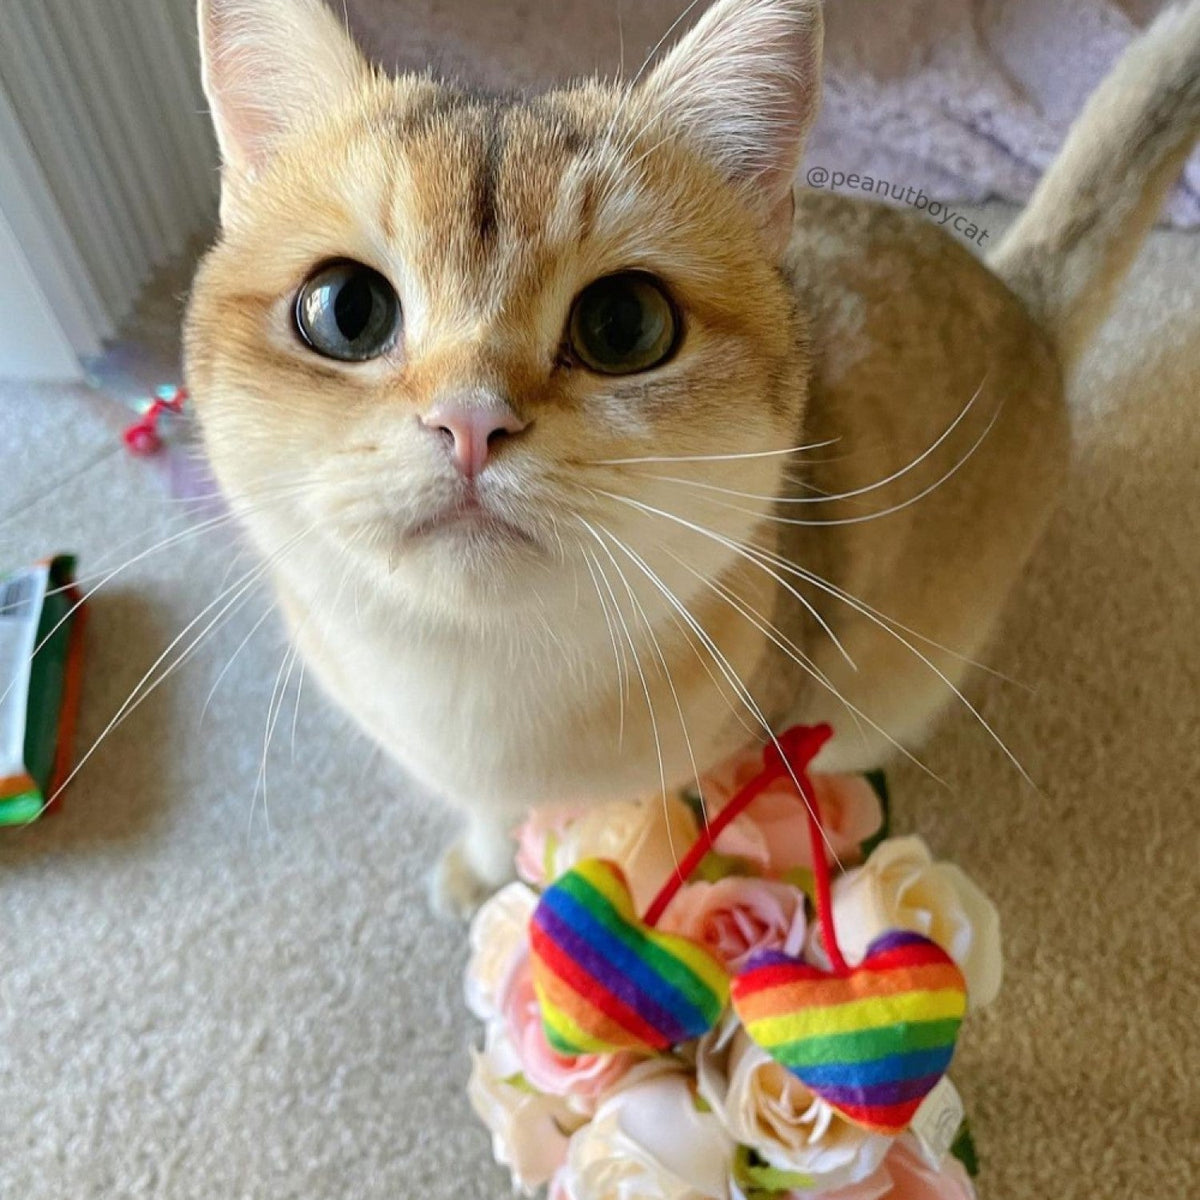 Pride Heart Strings Cat Toy